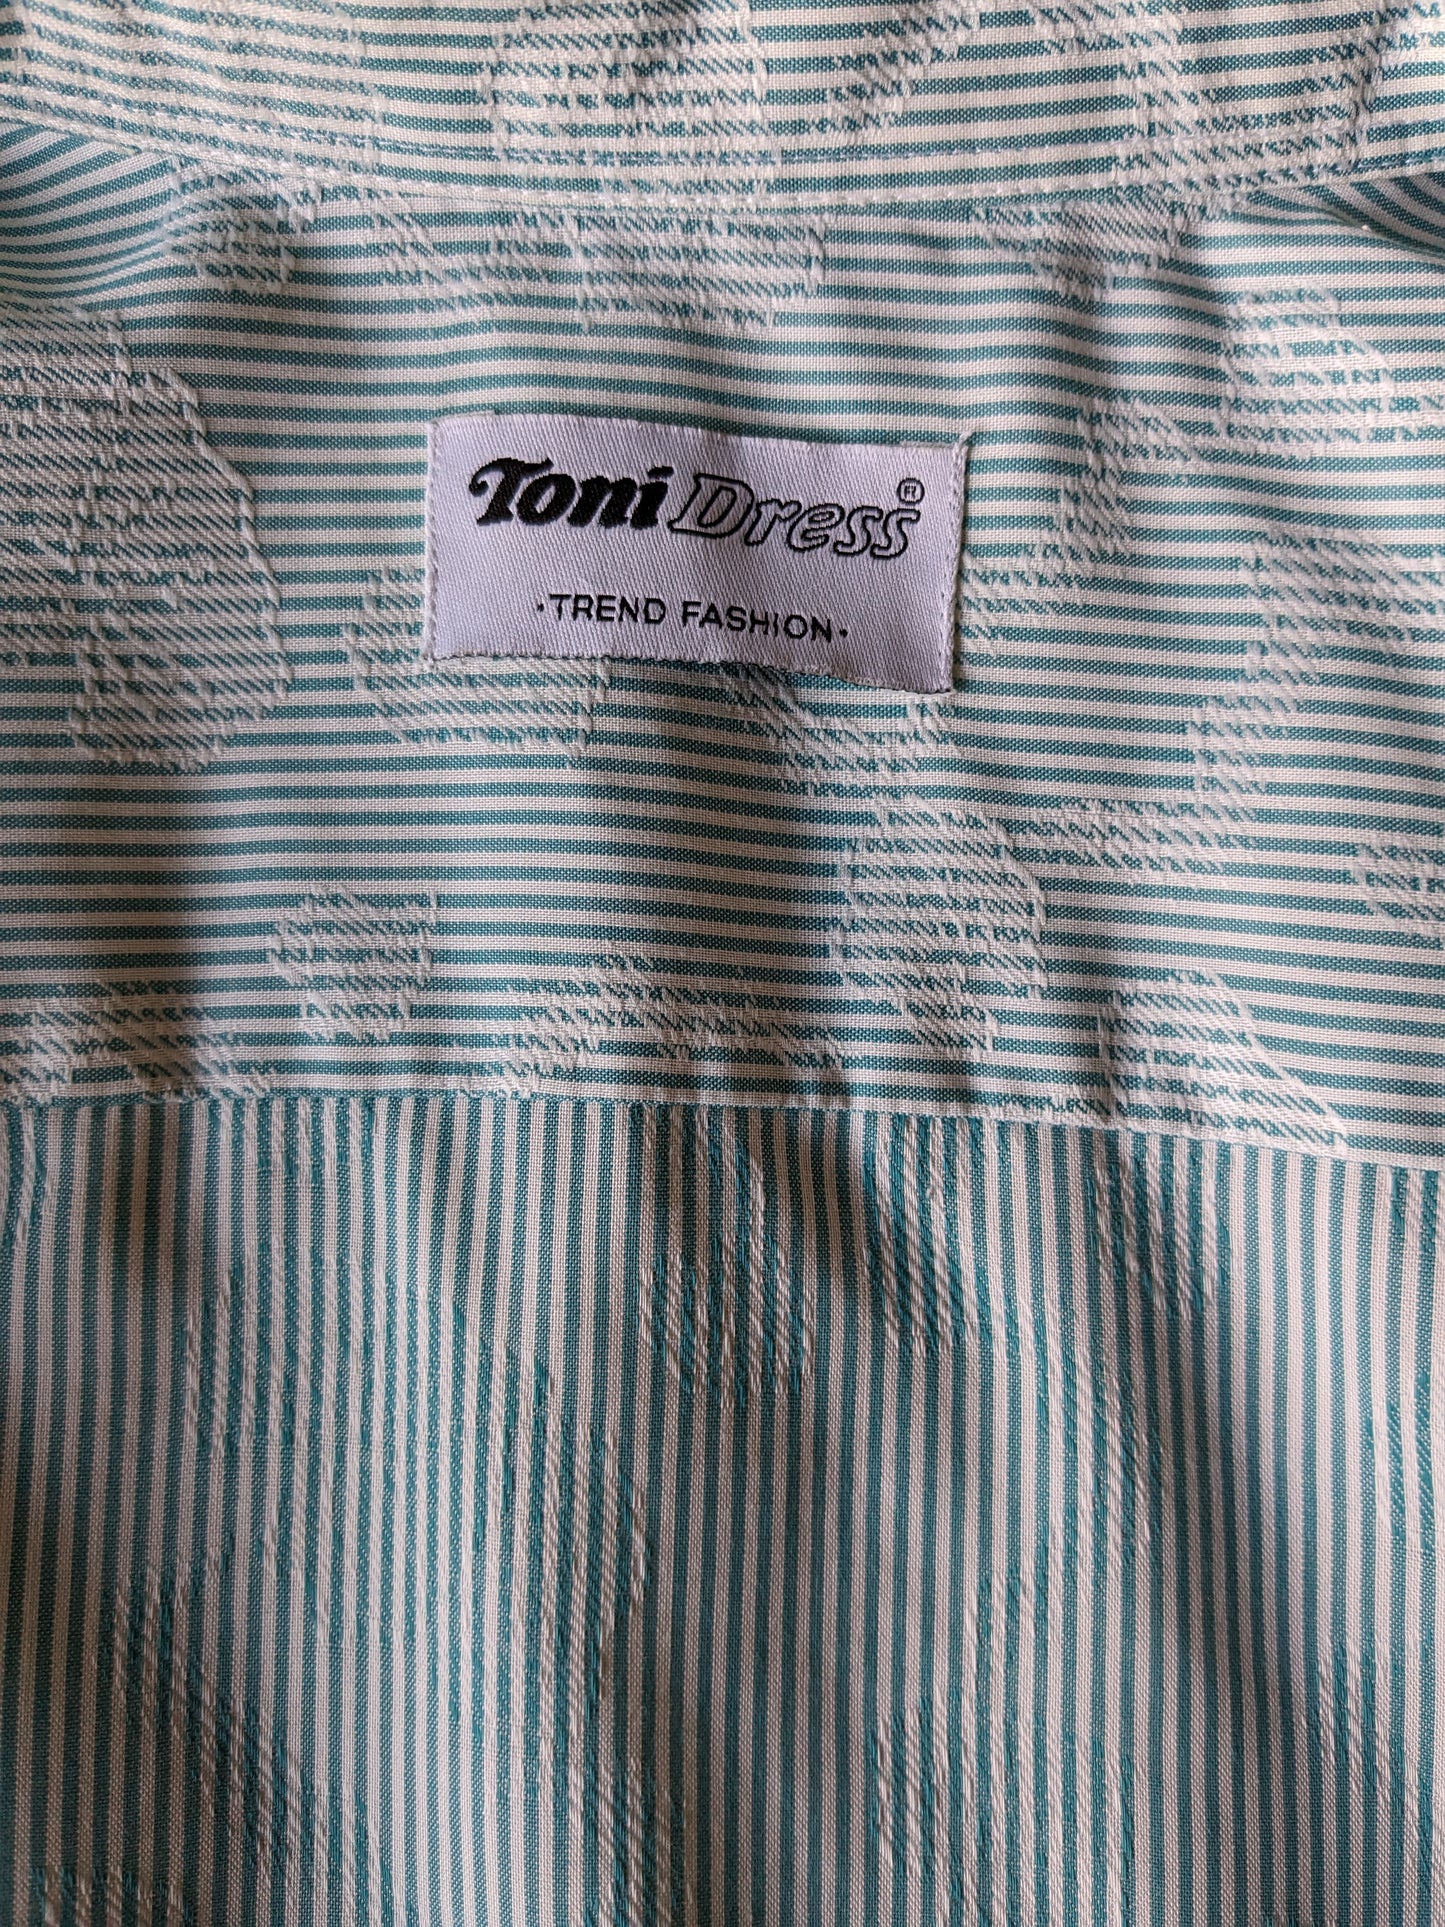 Vintage Toni -Hemd. Grün weiß gestreift mit weißem Blattmotiv. Größe M.